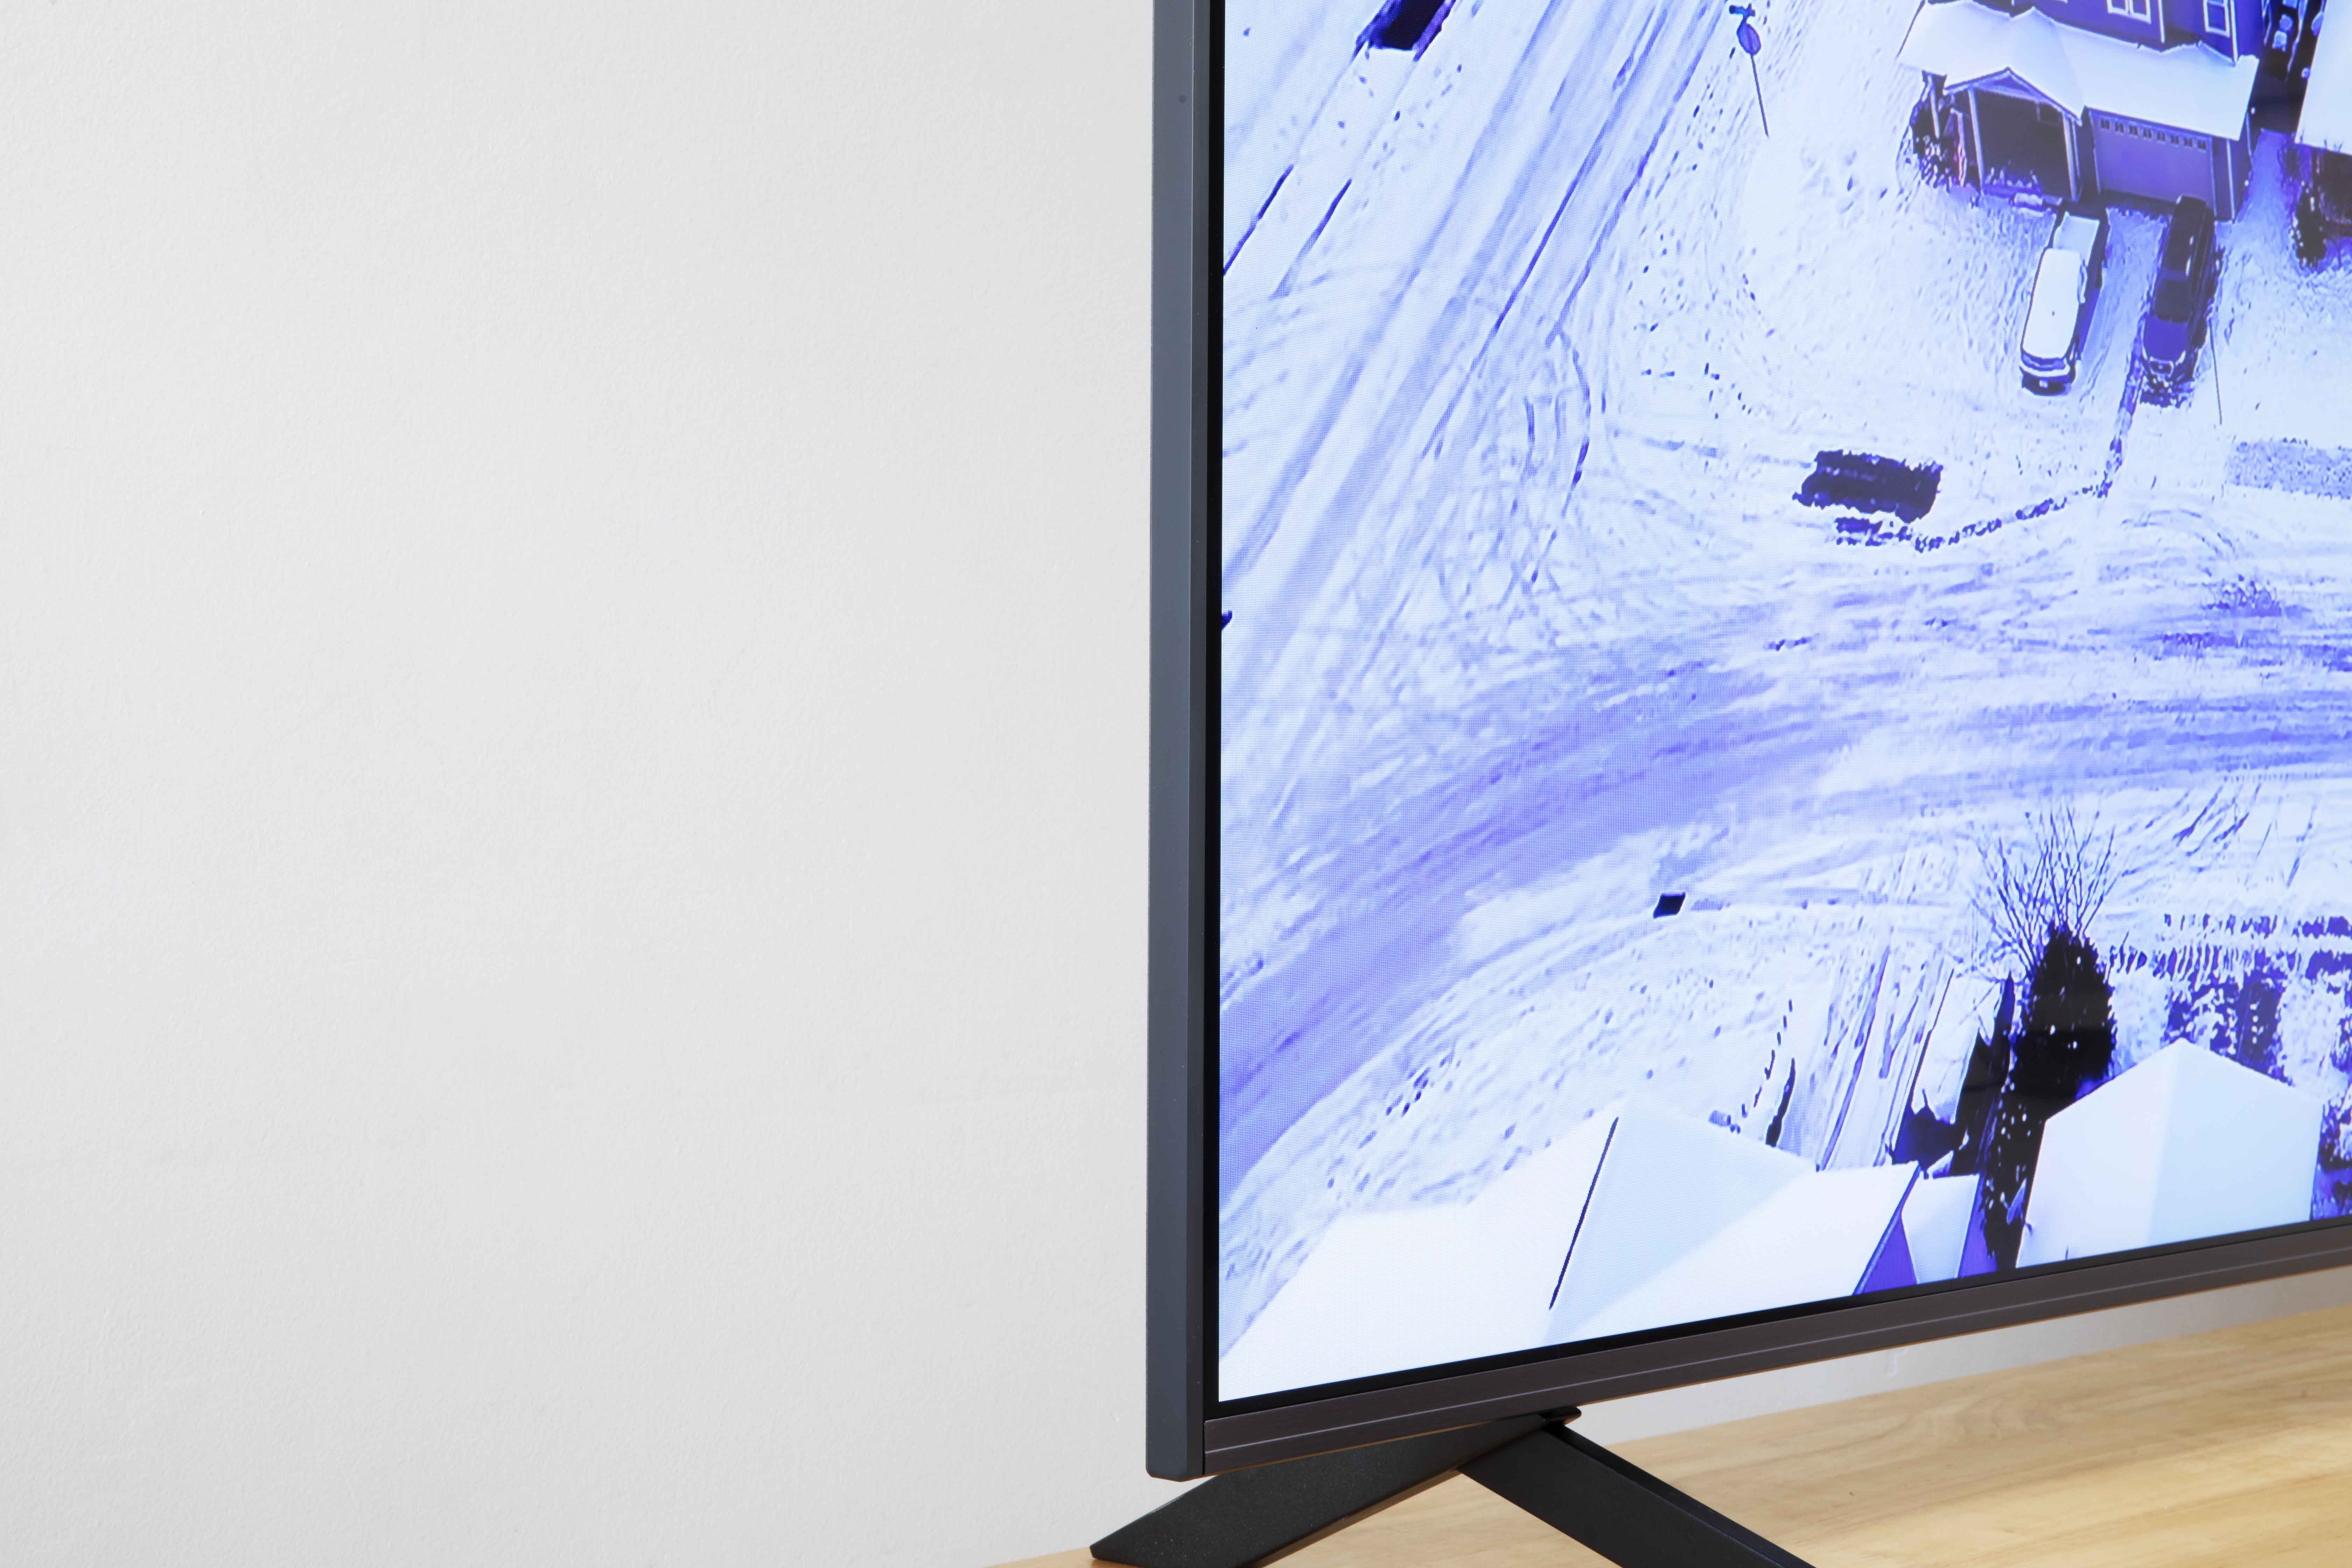 Đánh giá nhanh TV LG UR90 75 inch – Tivi cỡ lớn, giá chỉ 30,4 triệu đồng - 3